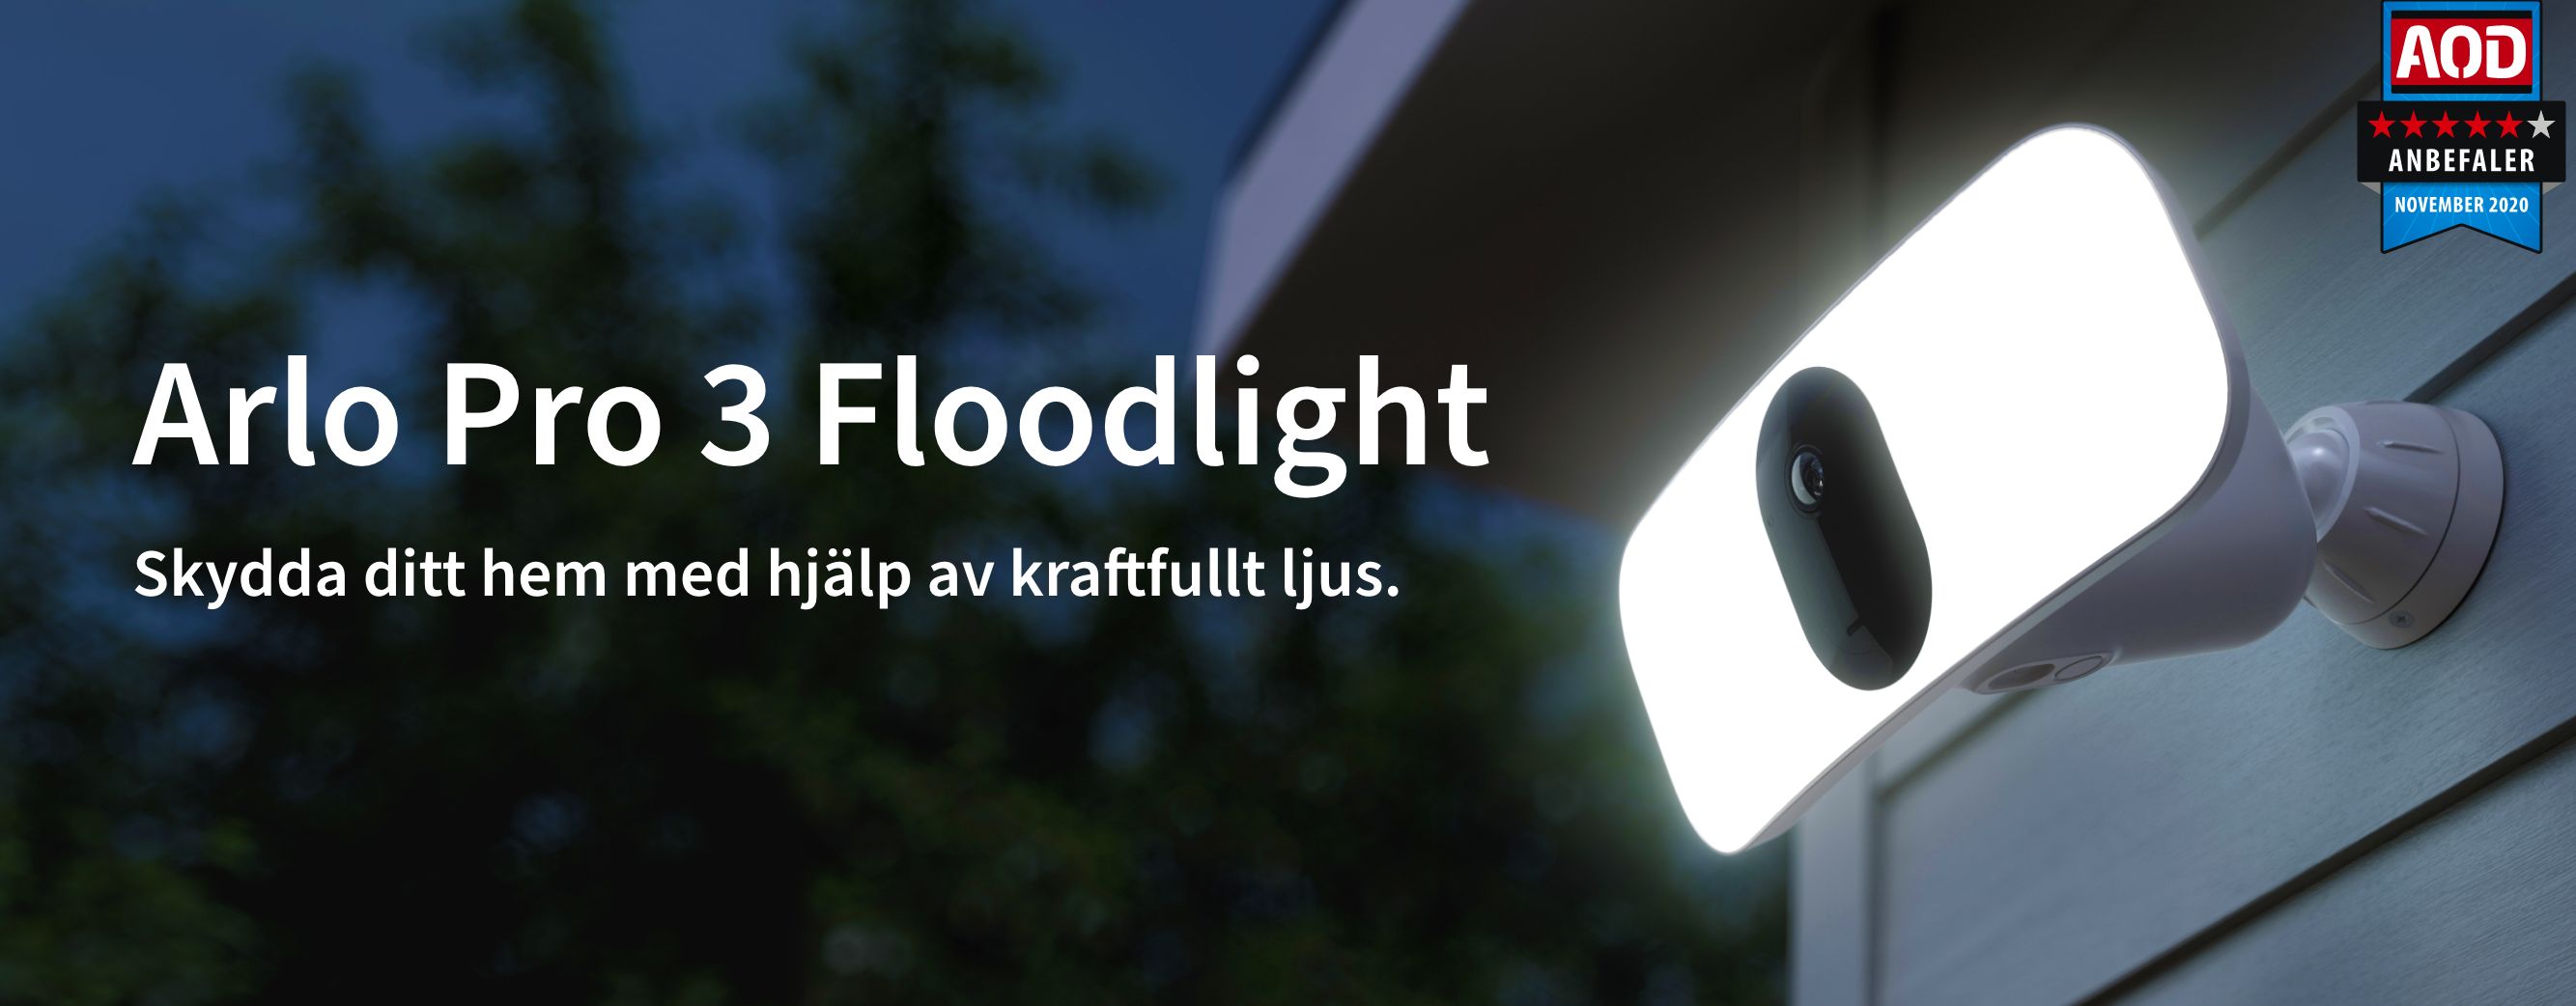 En Arlo Pro 3 Floodlight-säkerhetskamera fäst på en vägg utanför lyser en kraftfull sköld av ljus på natten - vinnare av AOD-priset